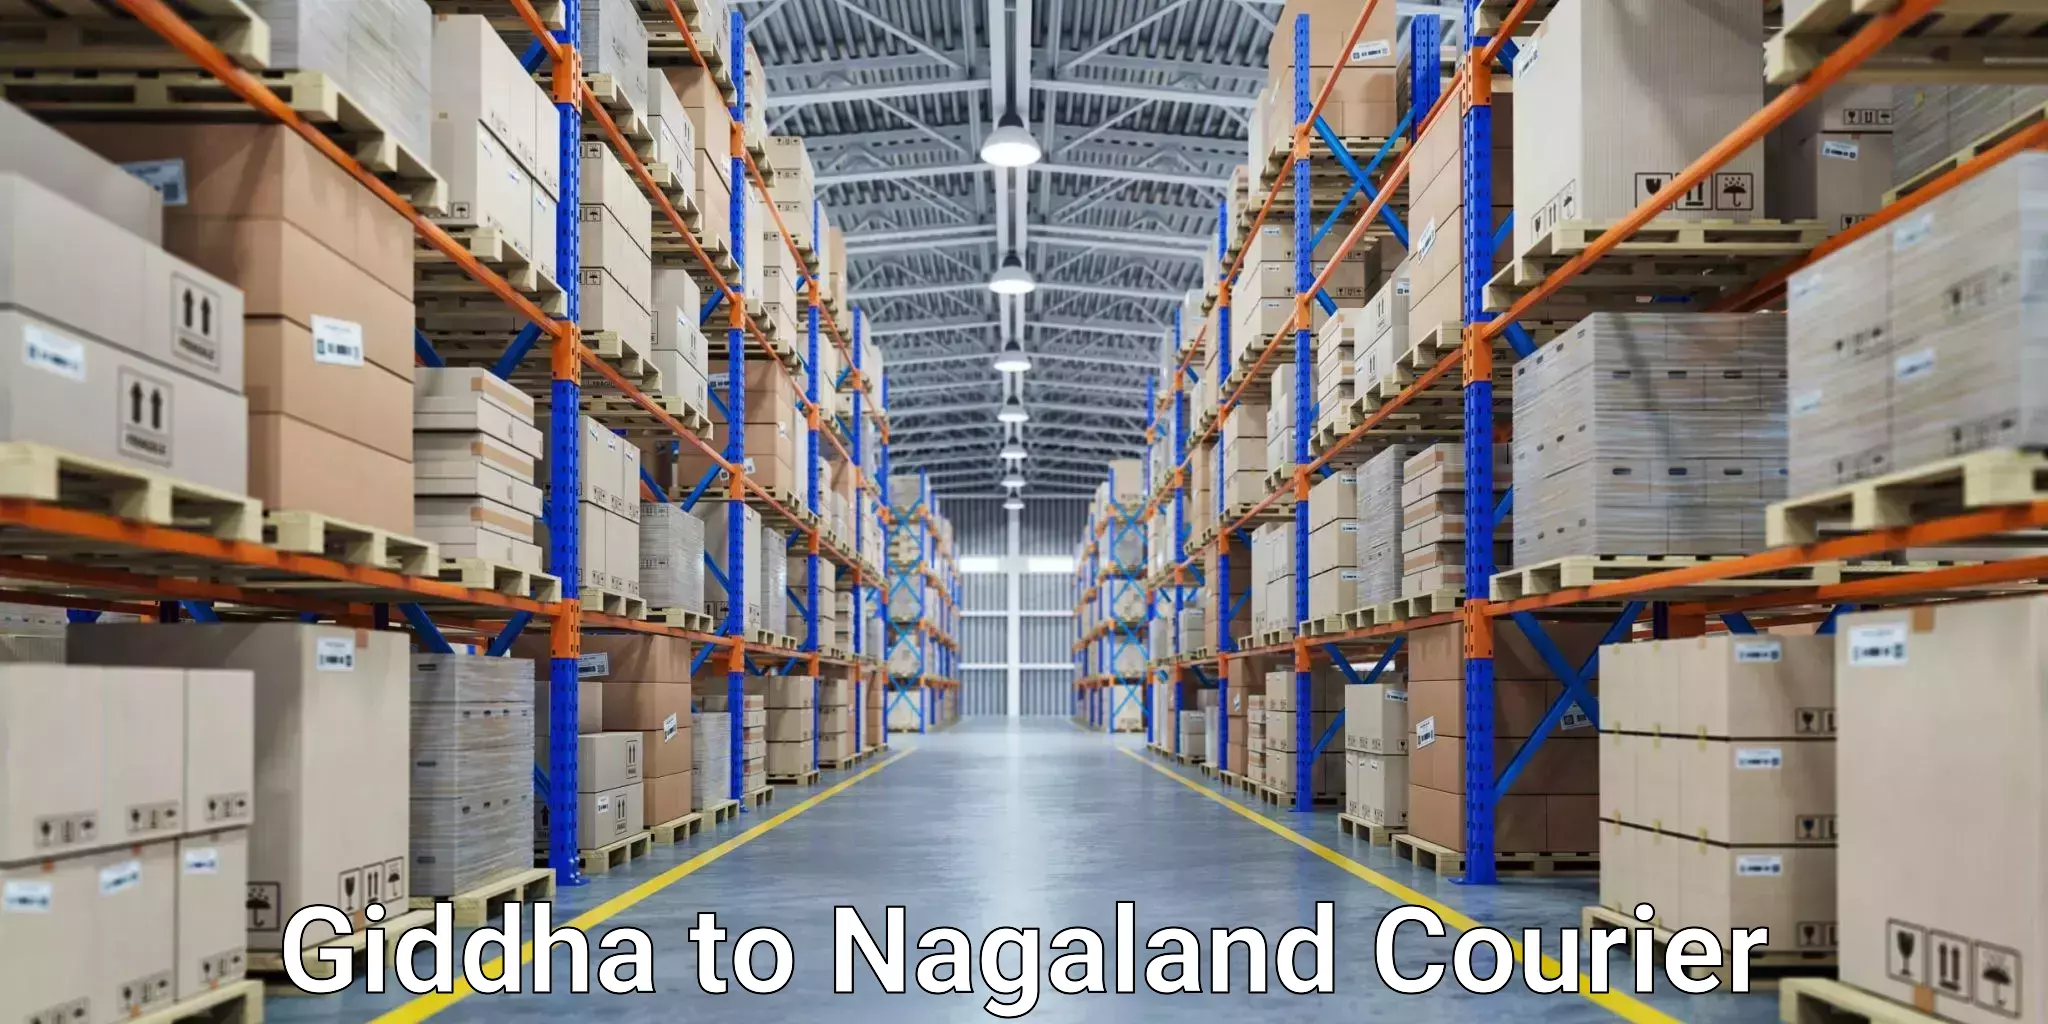 Business shipping needs Giddha to Nagaland